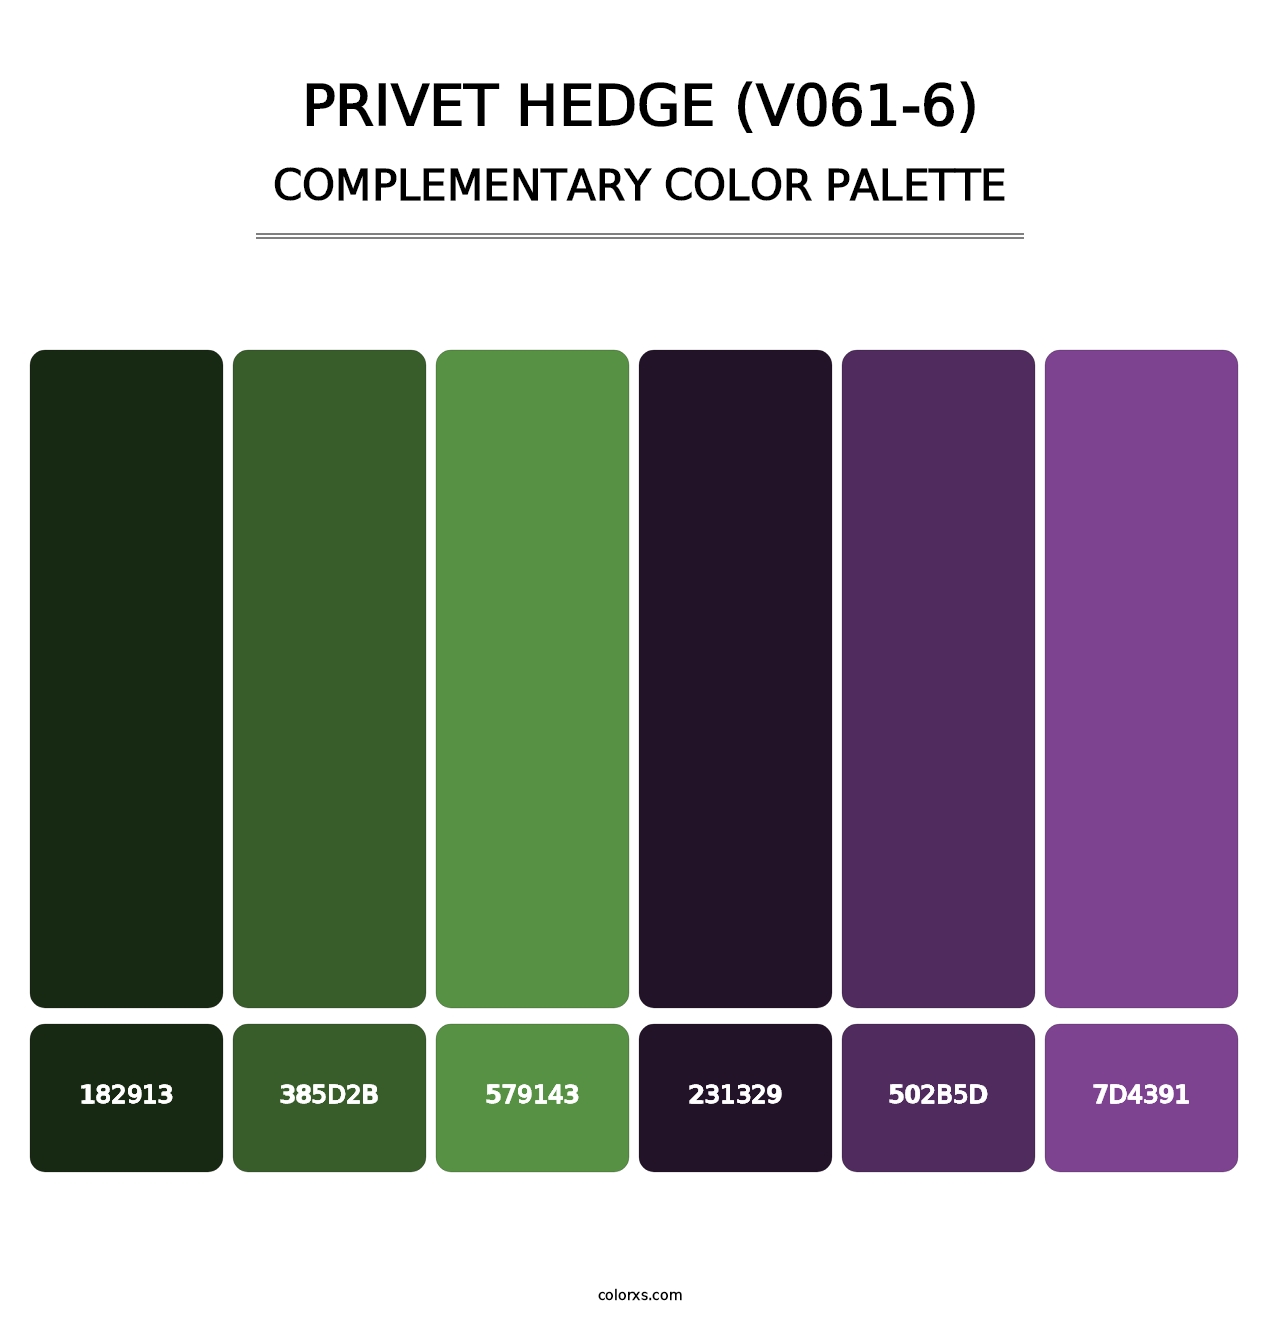 Privet Hedge (V061-6) - Complementary Color Palette